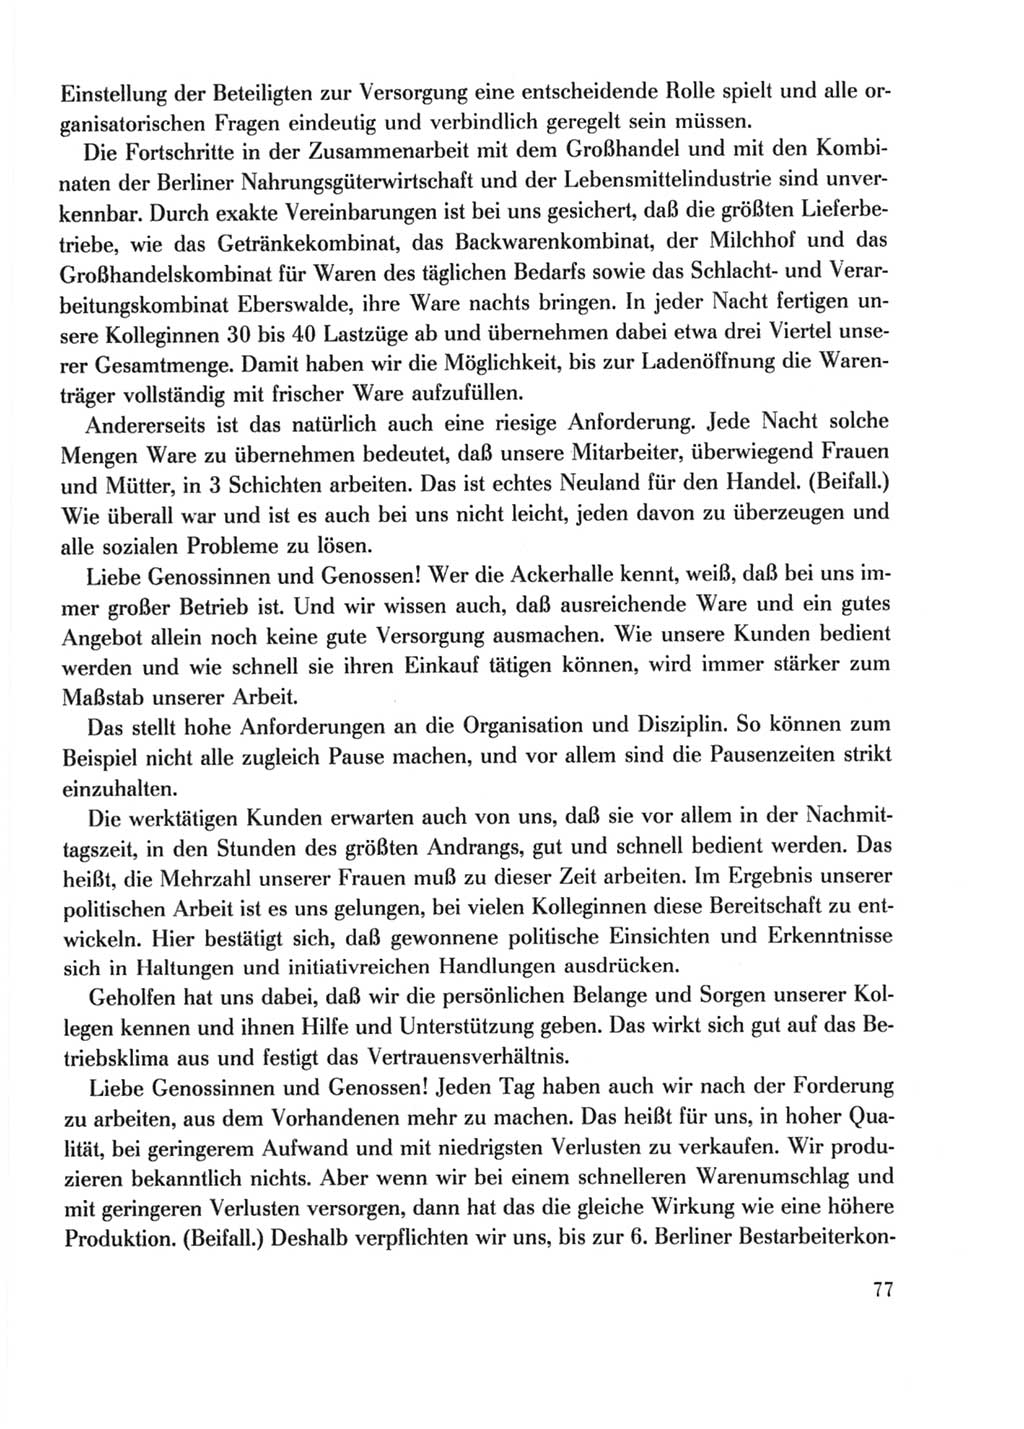 Protokoll der Verhandlungen des Ⅹ. Parteitages der Sozialistischen Einheitspartei Deutschlands (SED) [Deutsche Demokratische Republik (DDR)] 1981, Band 2, Seite 77 (Prot. Verh. Ⅹ. PT SED DDR 1981, Bd. 2, S. 77)